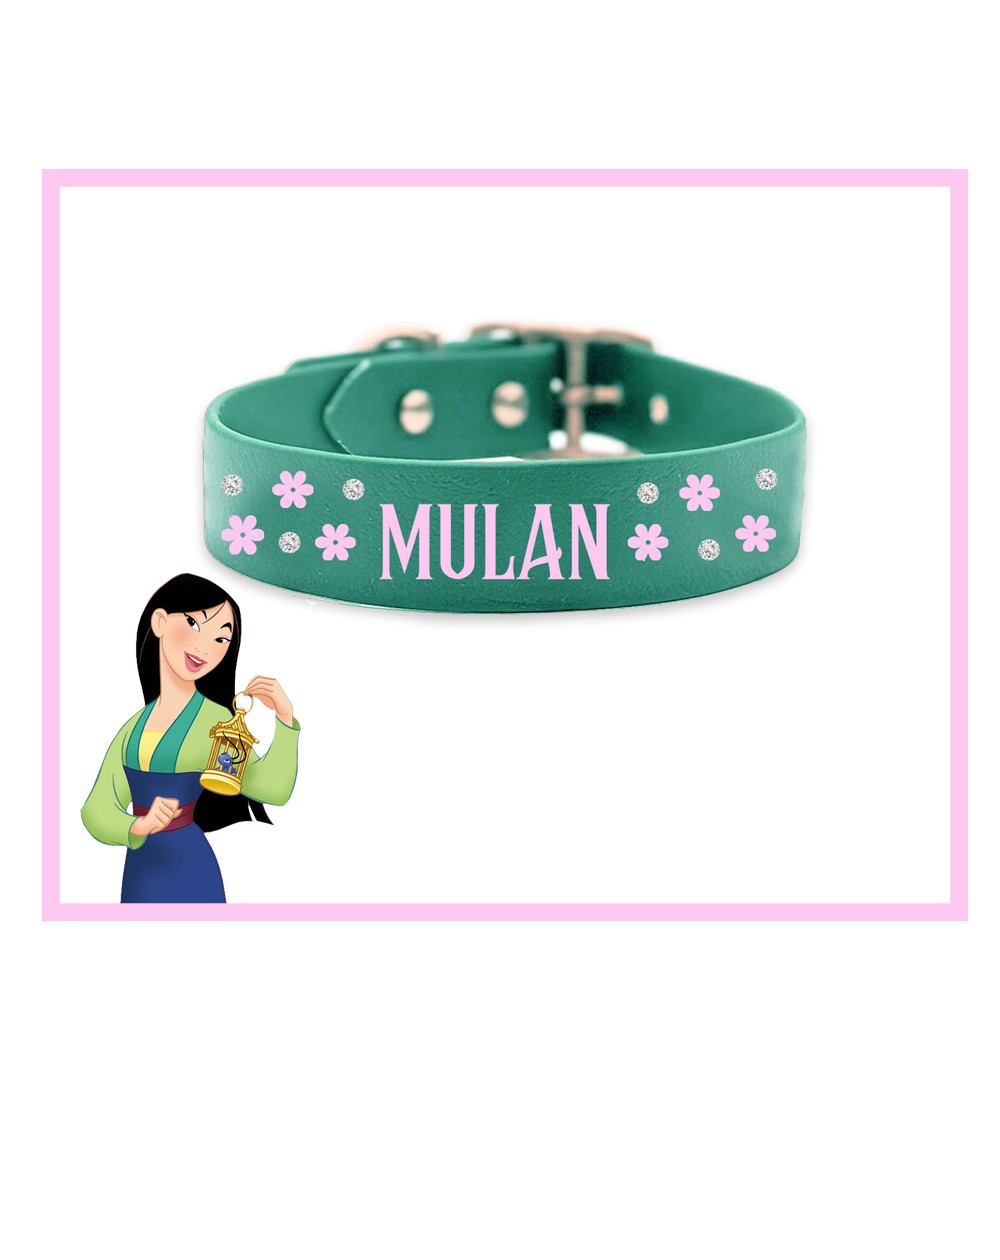 Collare personalizzato con nome per cani modello Mulan